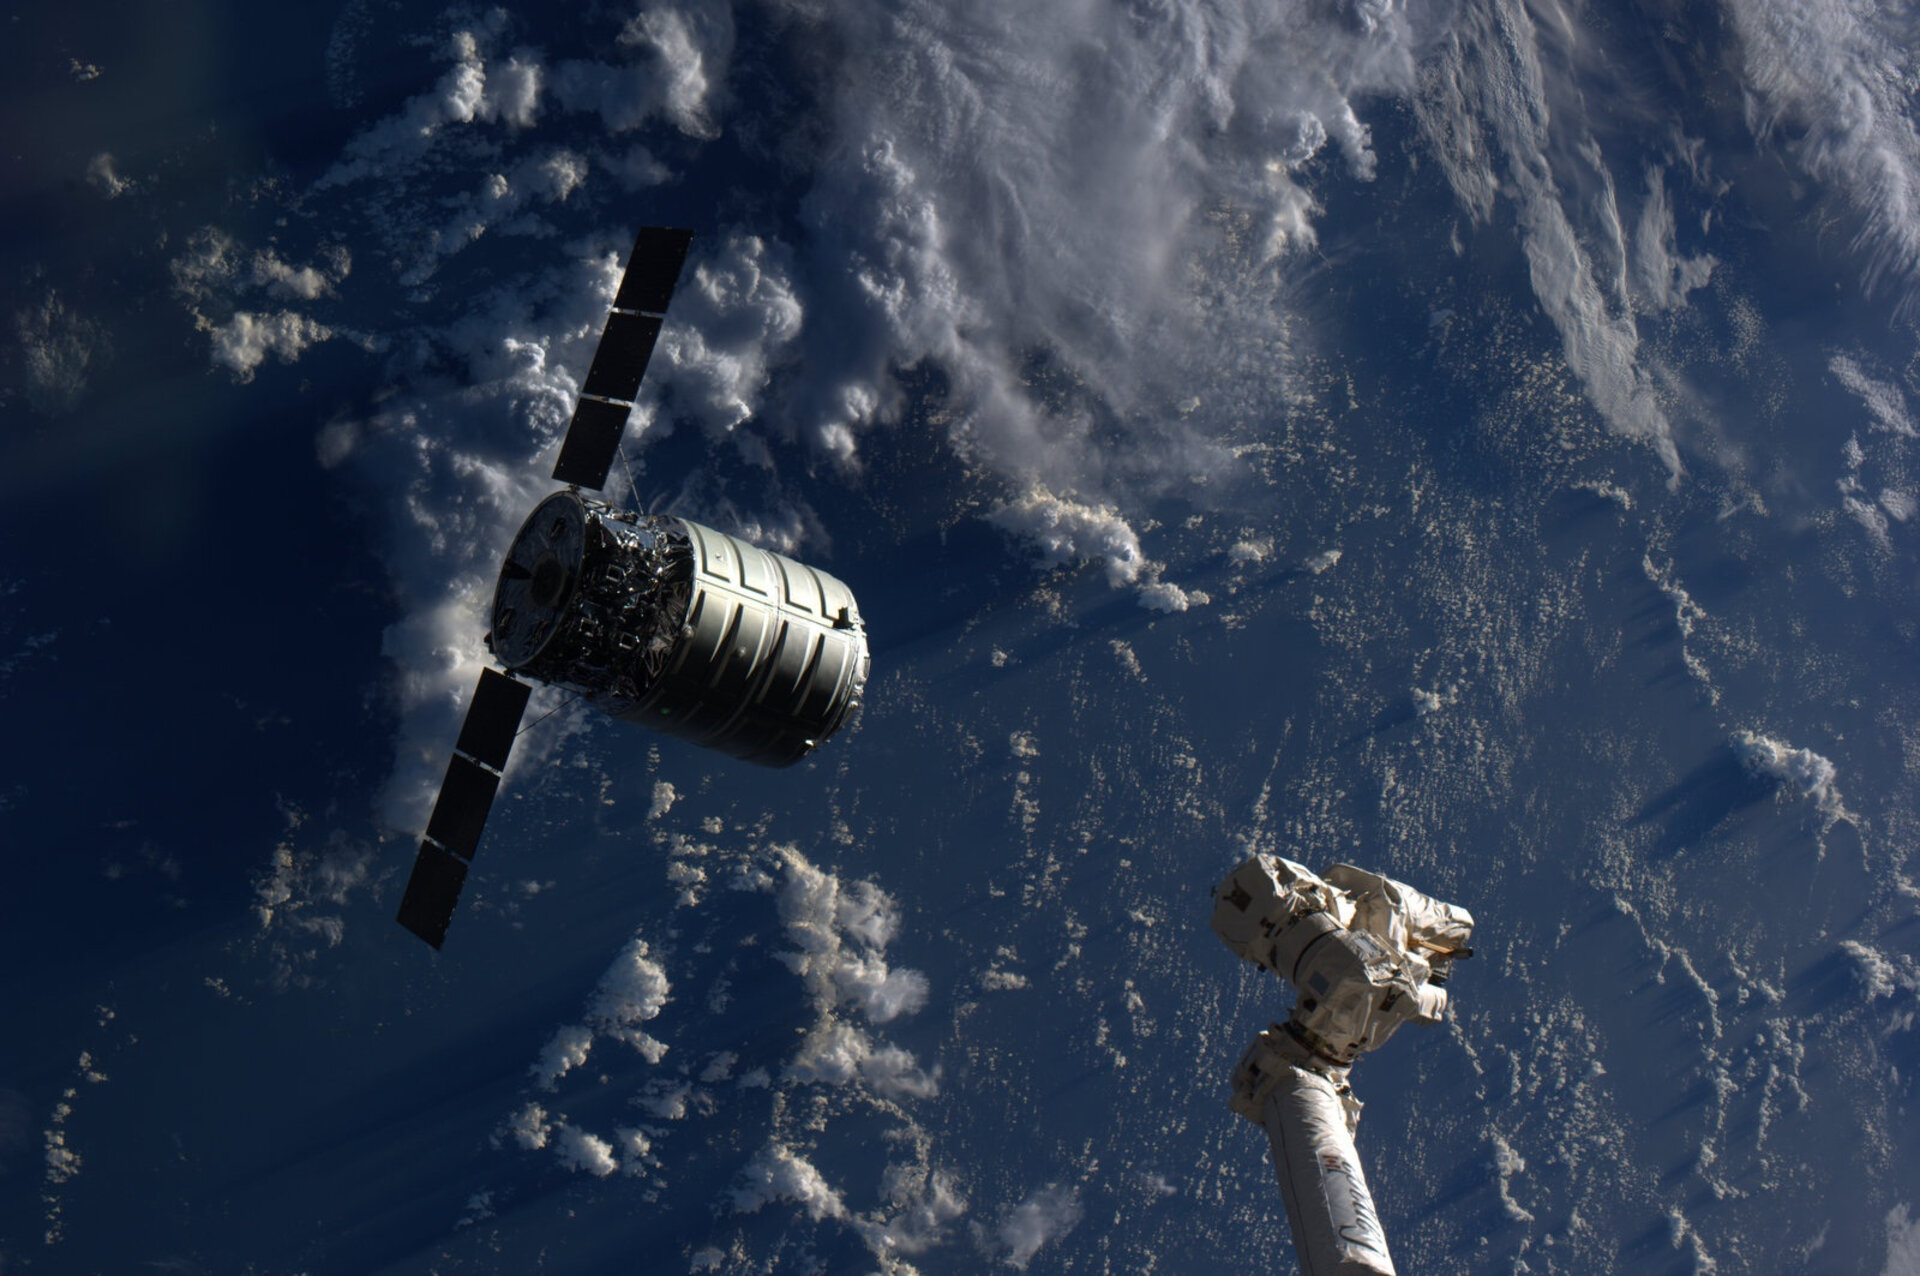 Фото космического корабля в космосе. Cygnus МКС. Космический Спутник. Спутник в космосе. Космические аппараты в космосе.